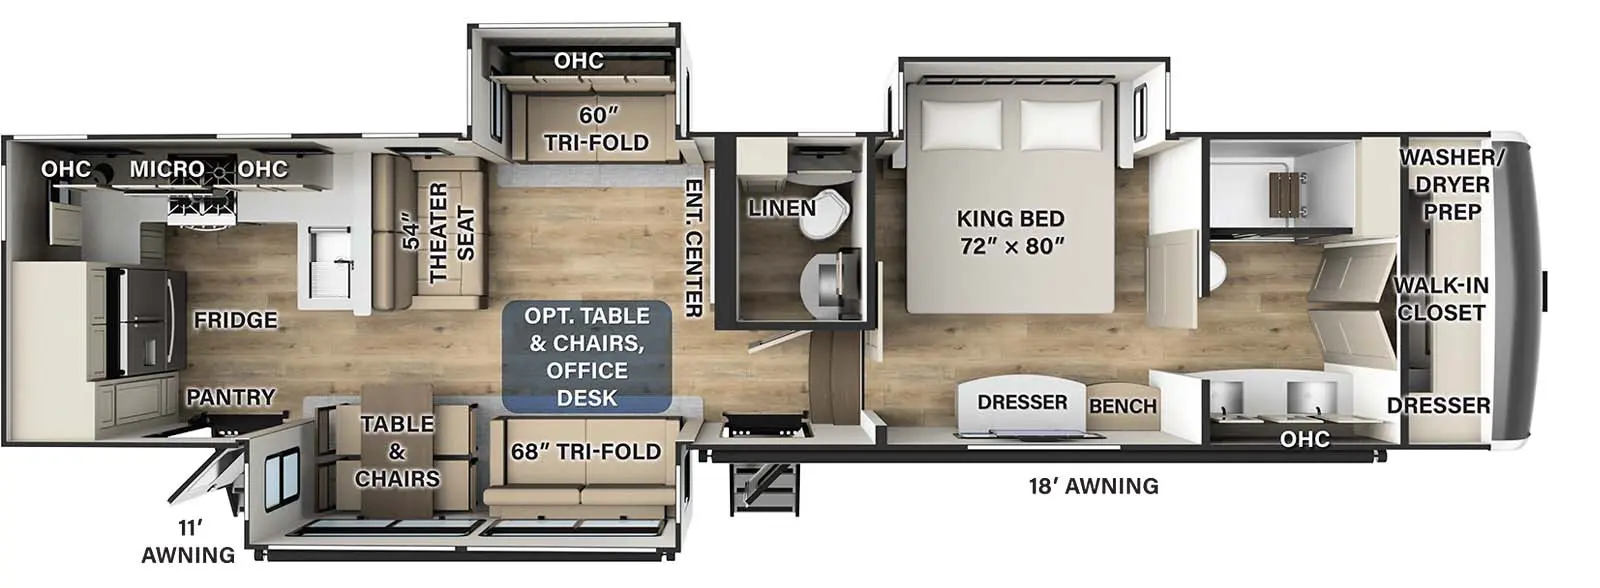 384RK - DSO Floorplan Image